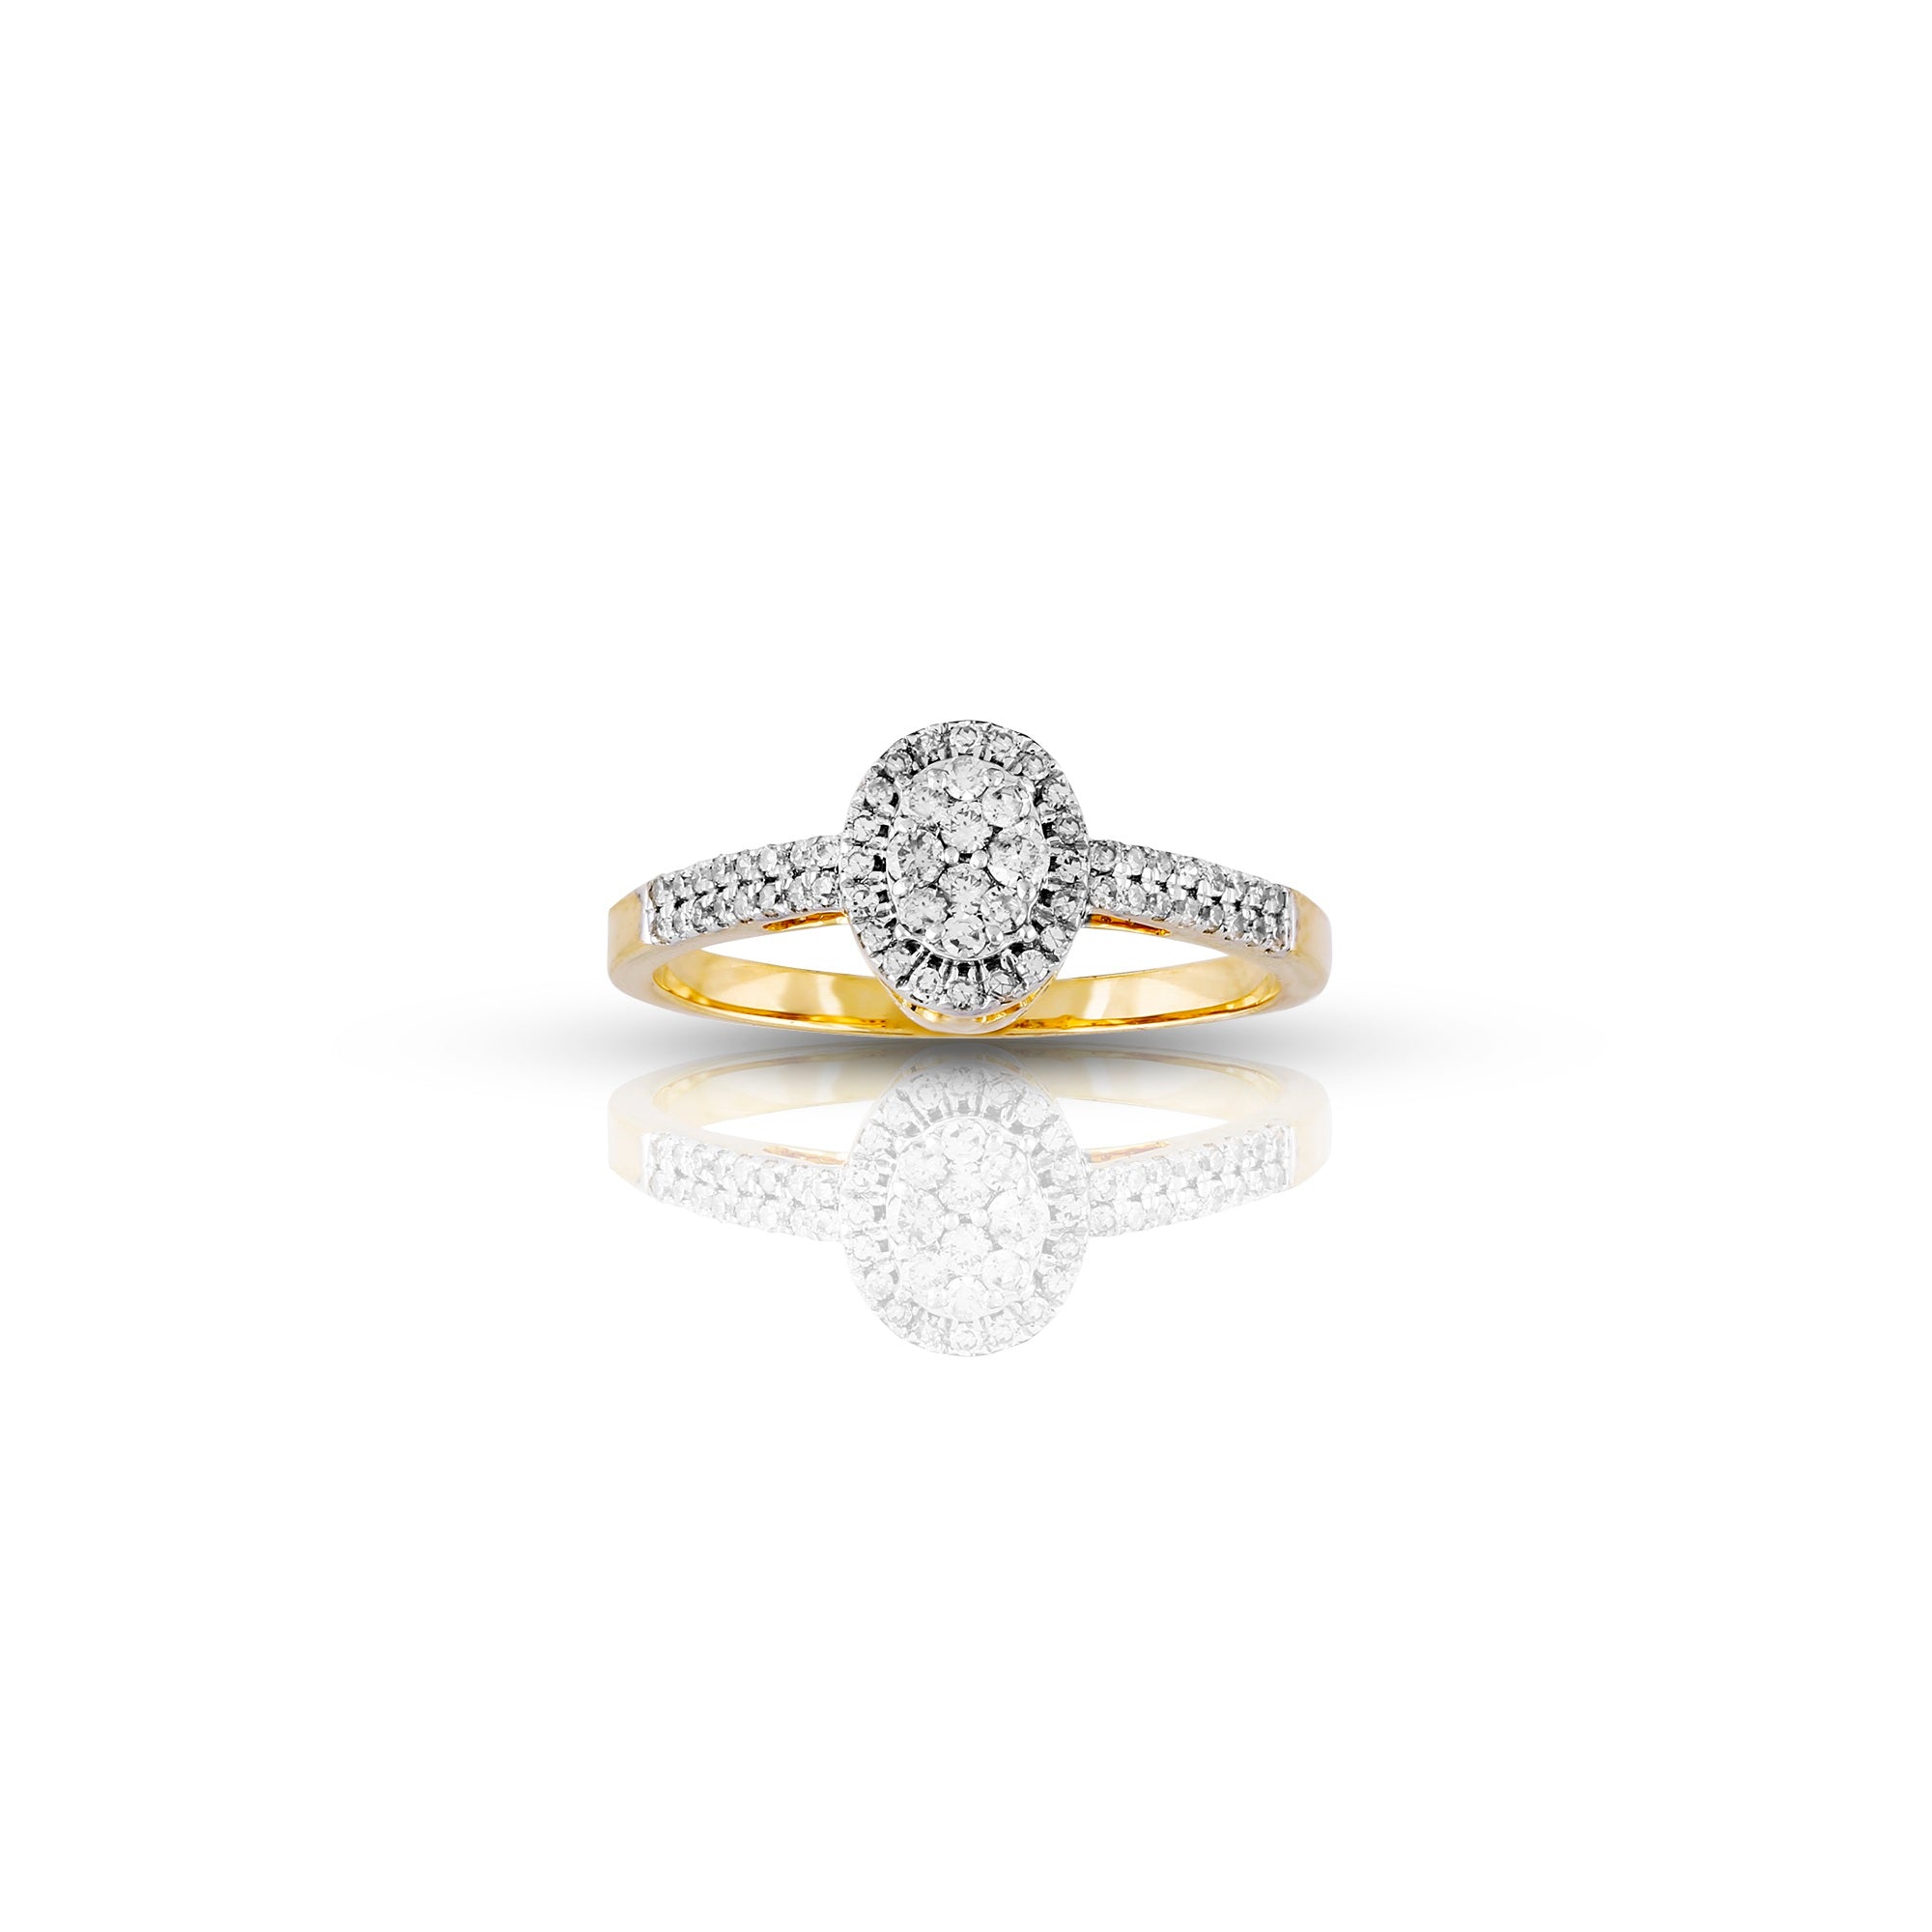 Yellow Gold White Diamond Studded Ring by Rafaela Jewelry